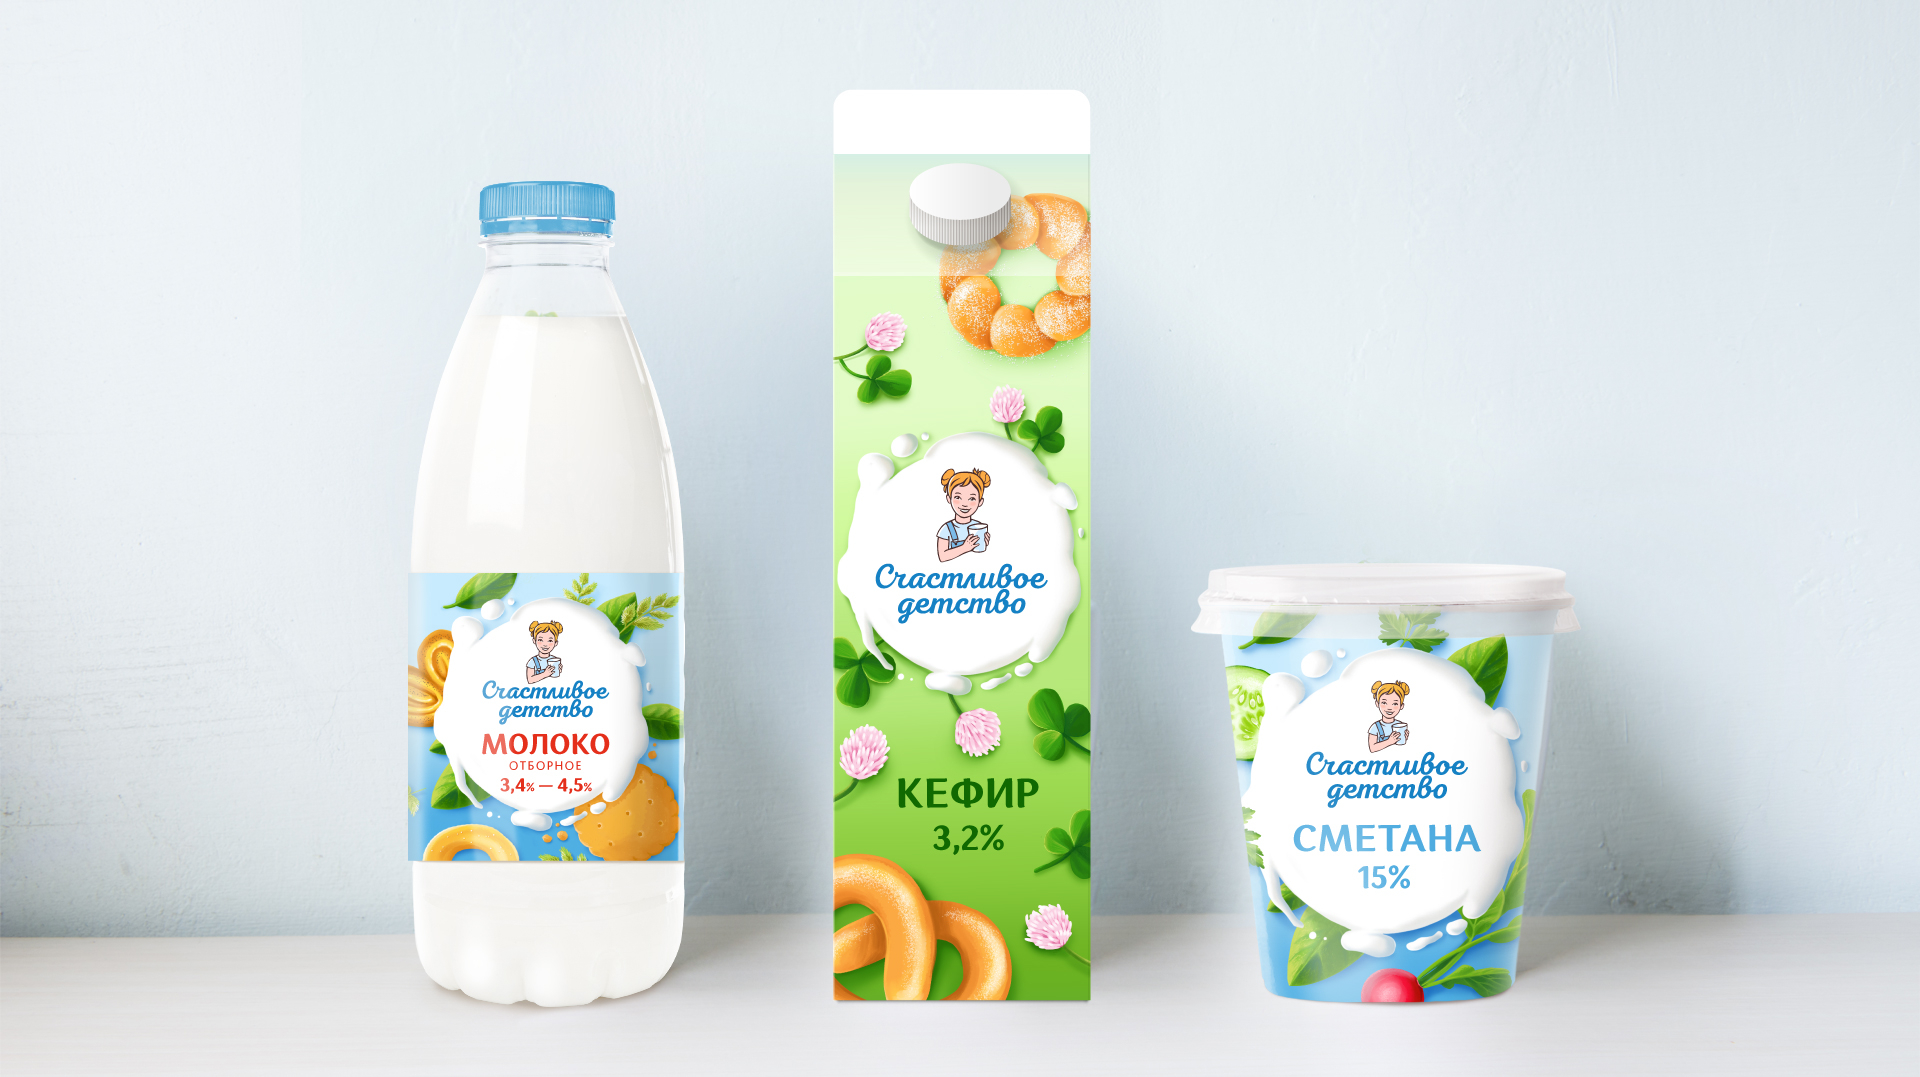 Дизайн упаковки молочной продукции Счастливое детство